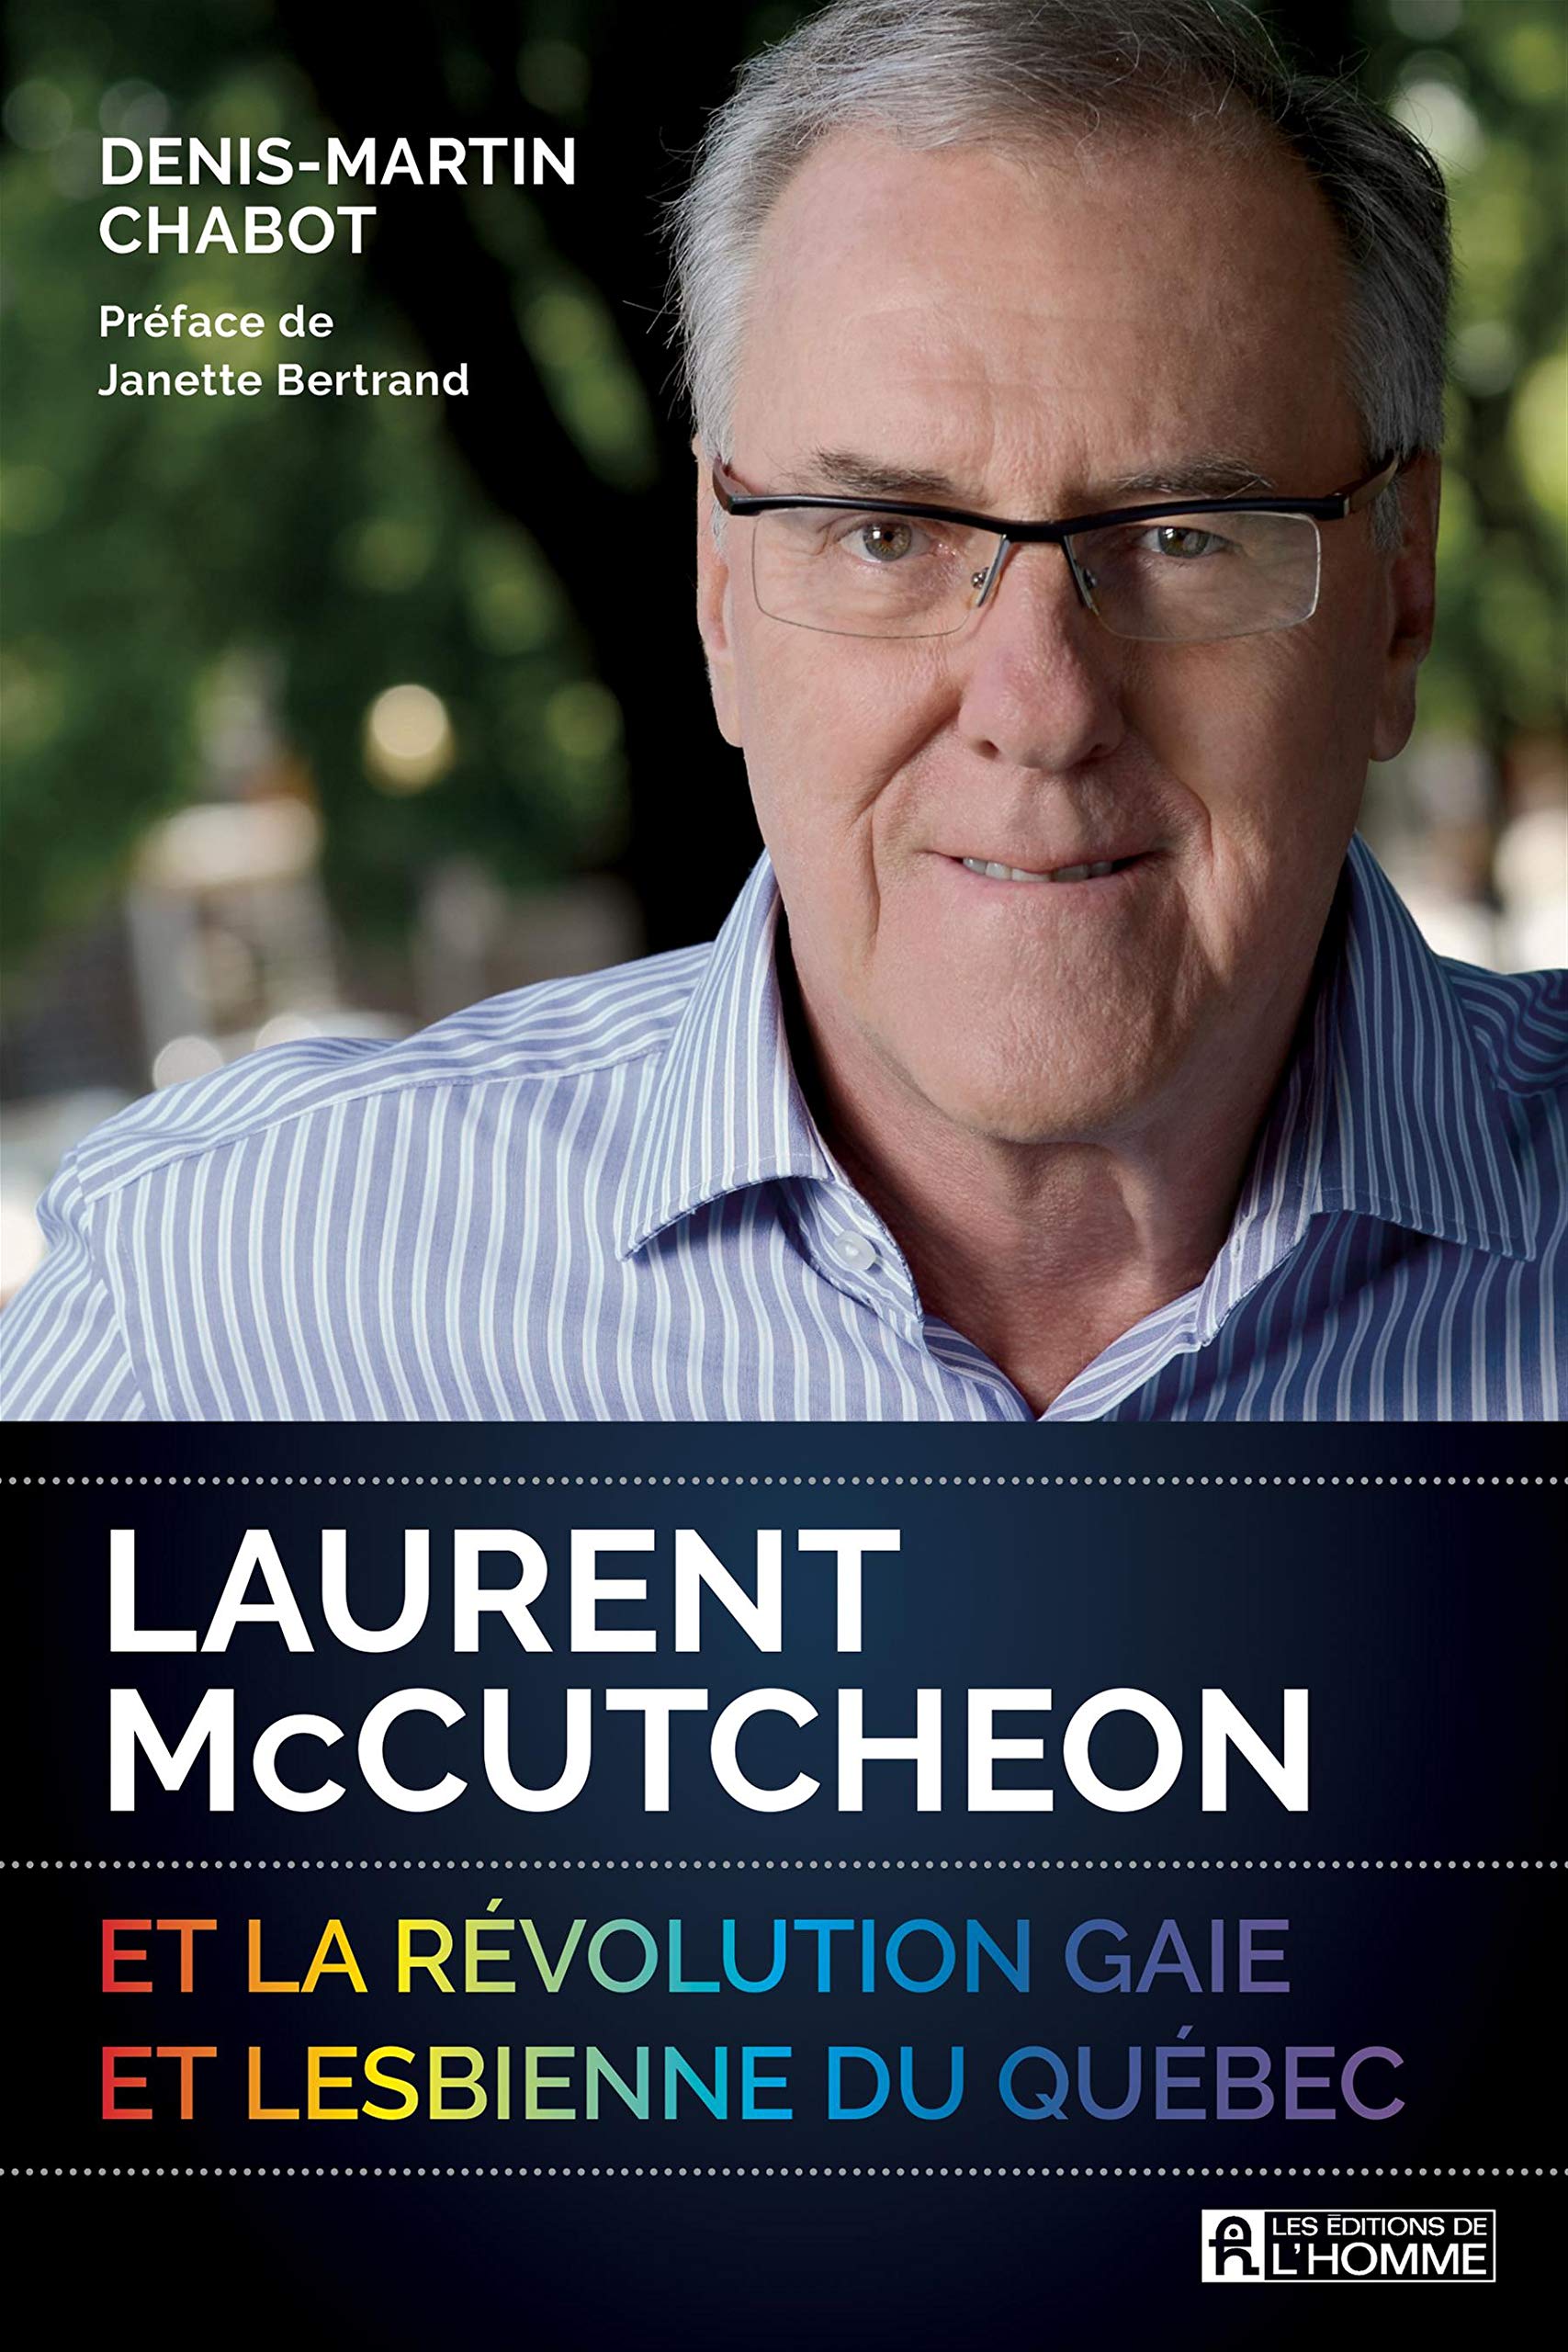 Laurent McCutheon et la révolution gaie et lesbienne du Québec - Denis-Martin Chabot